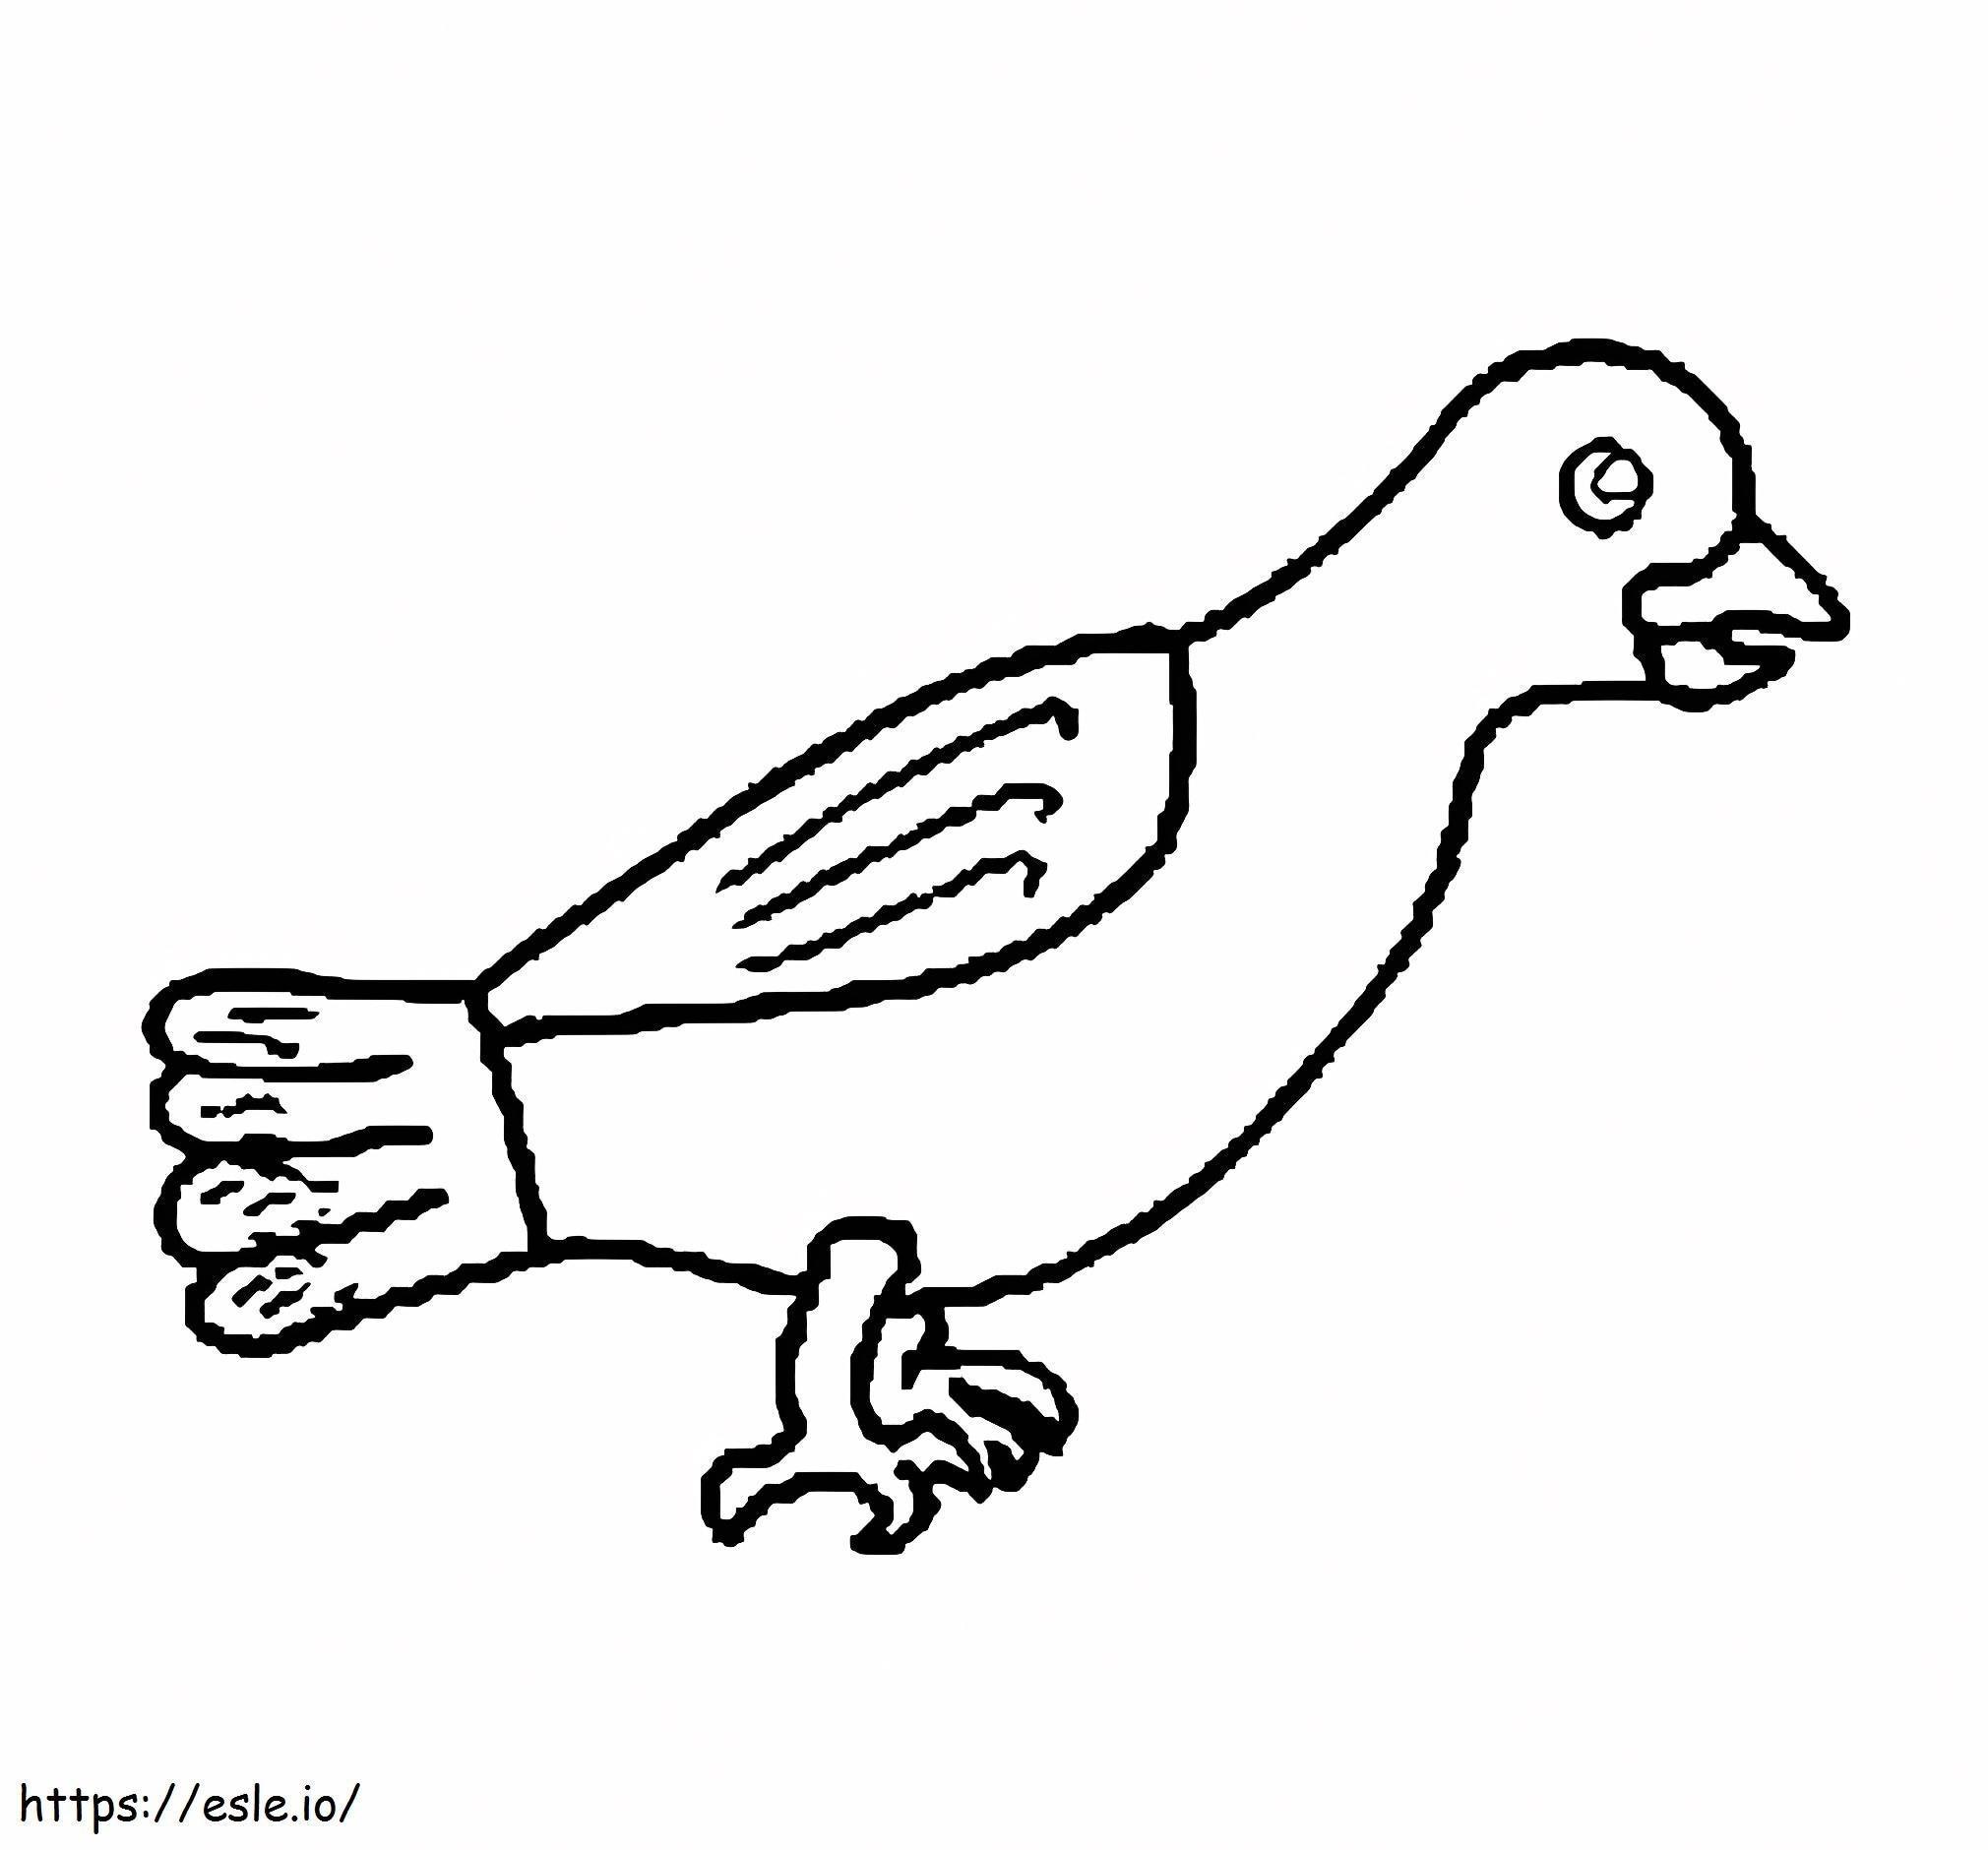 Coloriage Pigeon 13 à imprimer dessin